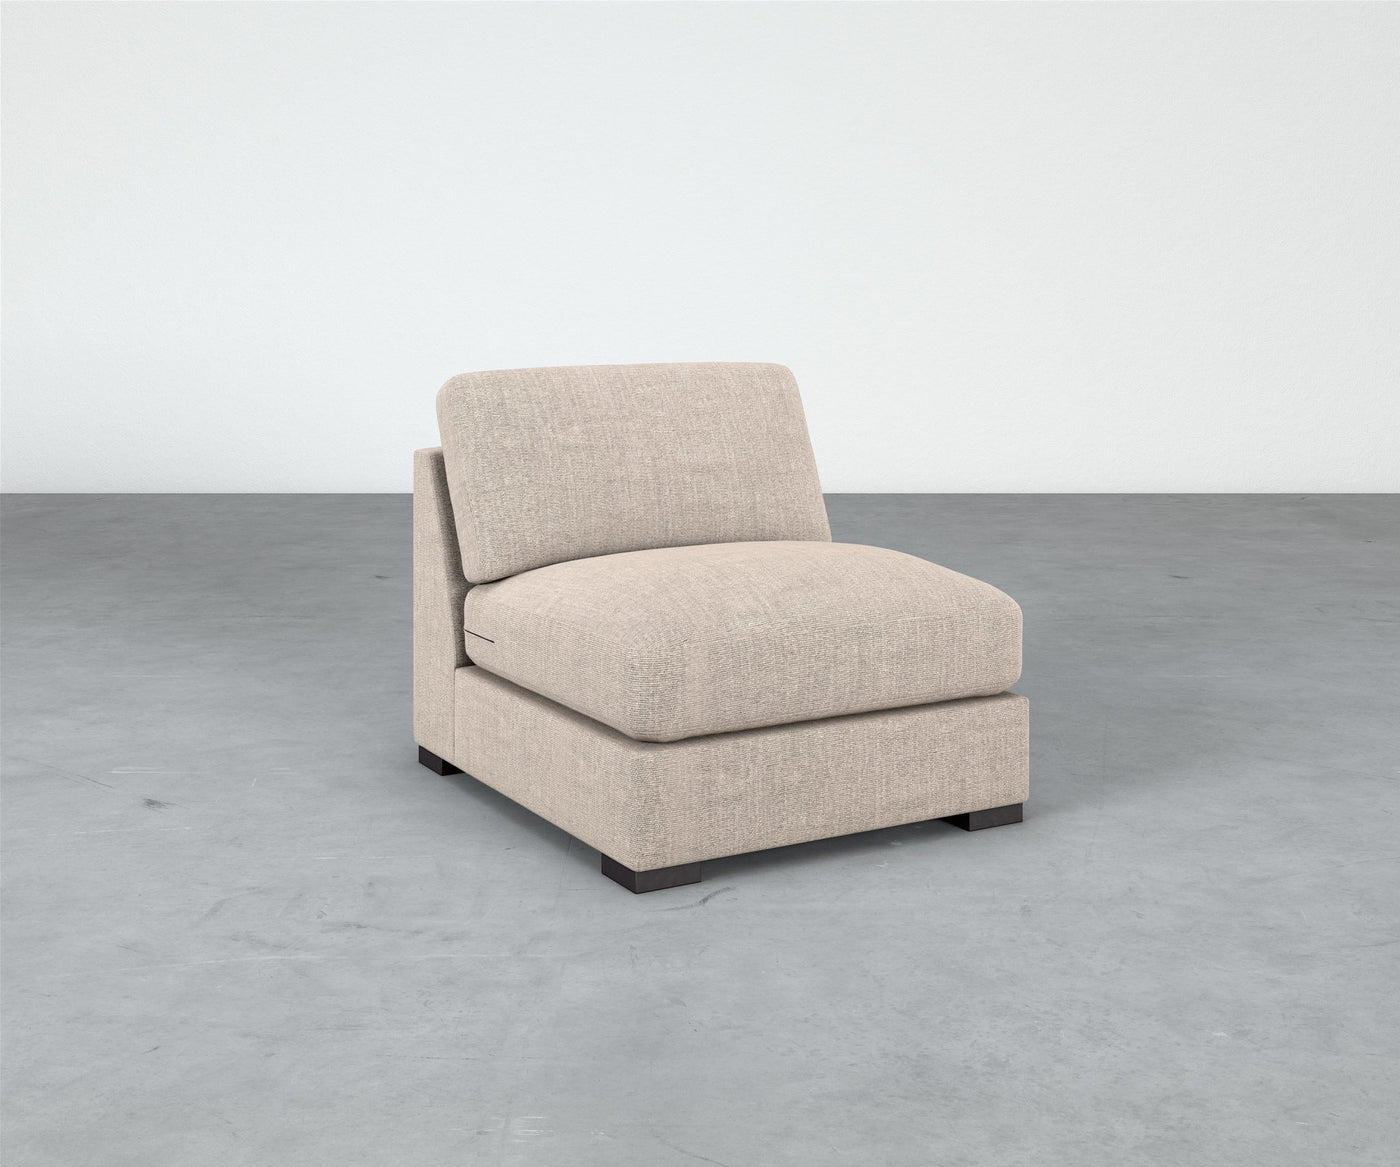 Coasty Armless Chair - Modular Component